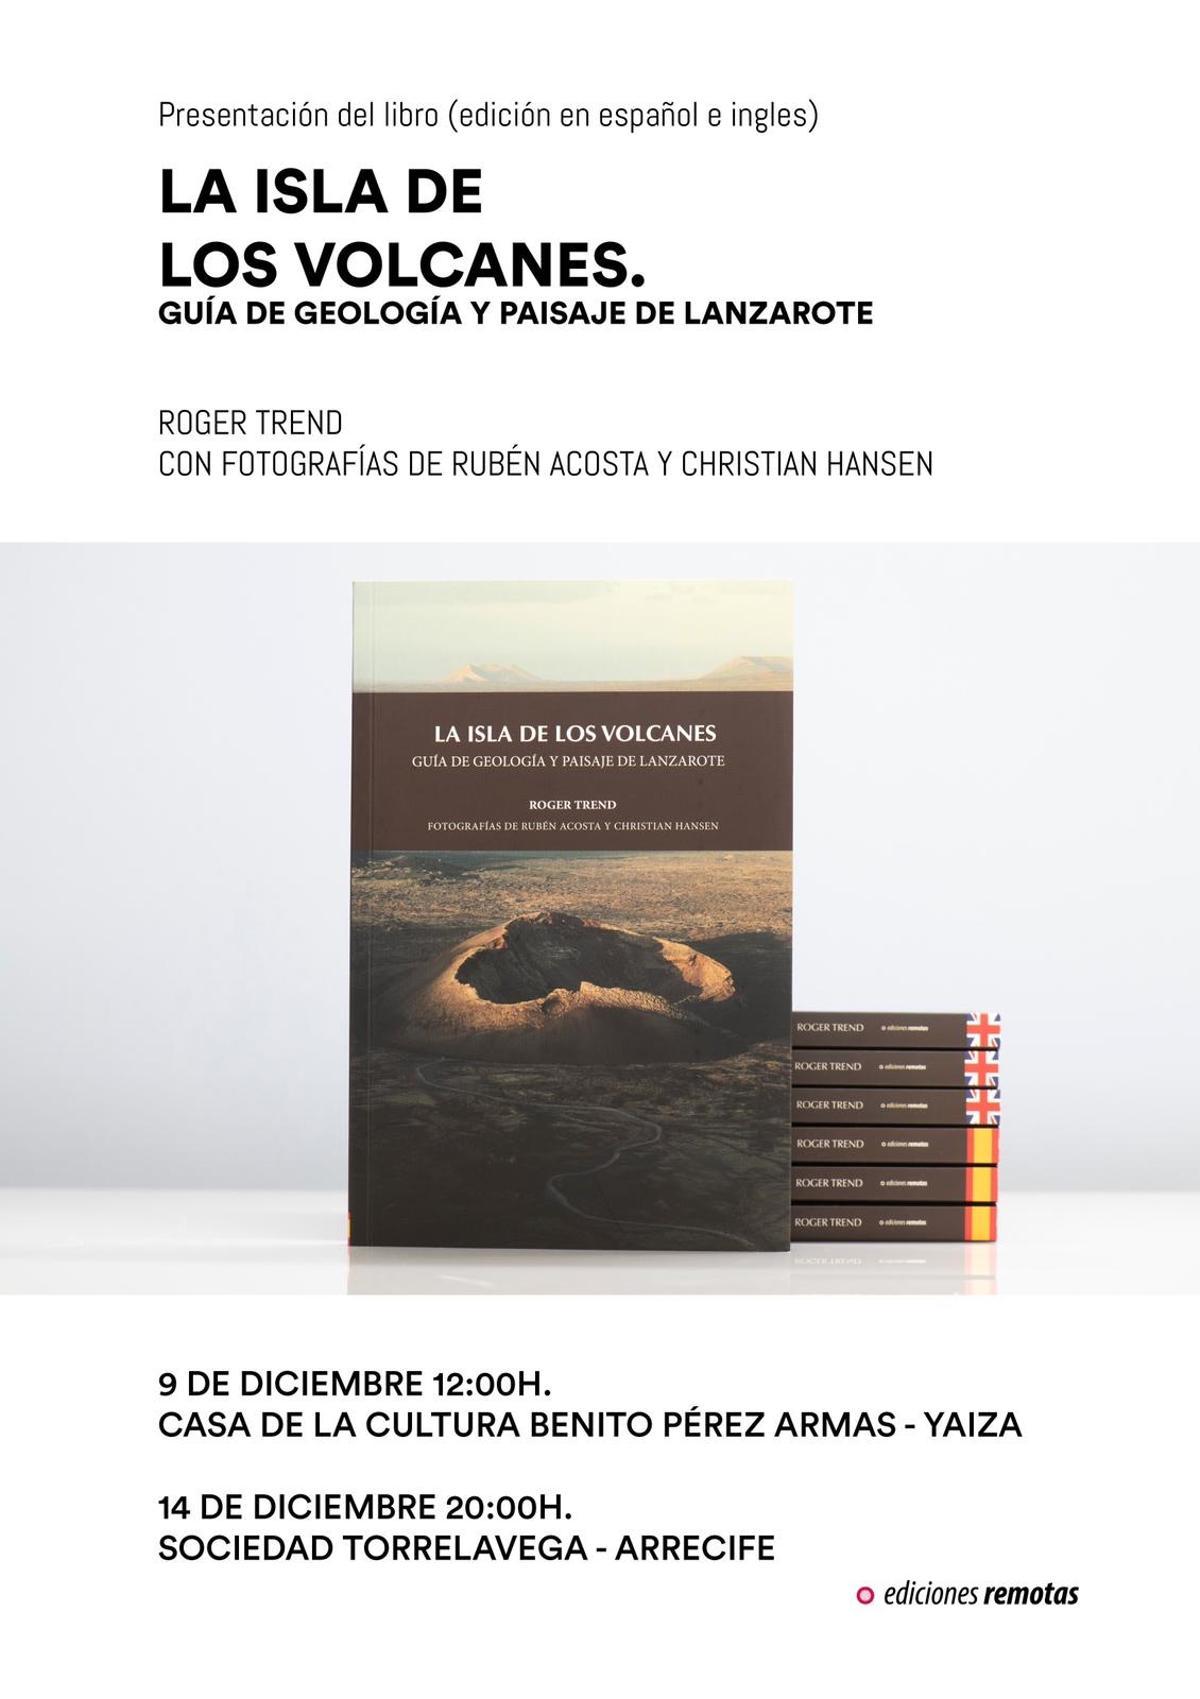 Portada del libro La isla de los volcanes: Guía de geología y paisaje de Lanzarote.